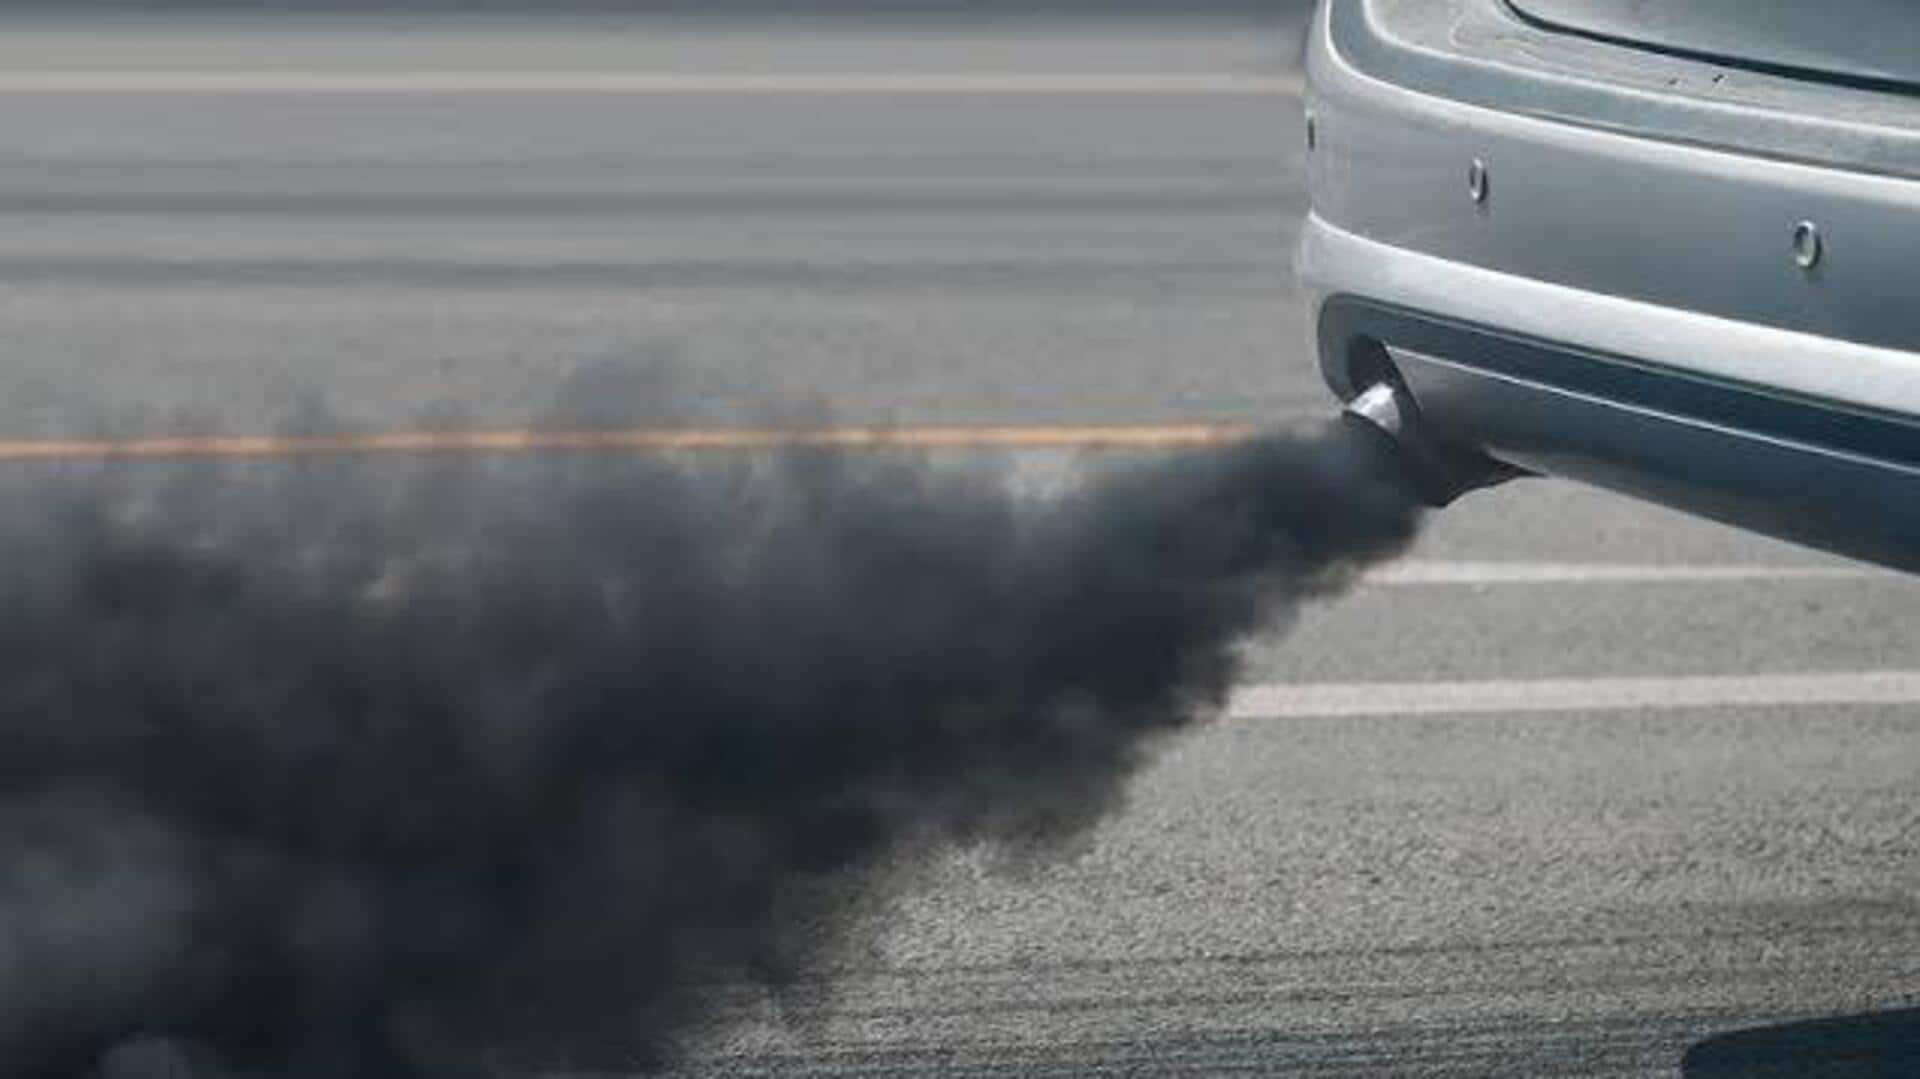 वाहनों के लिए नए उत्सर्जन मानक लाने की तैयारी, जानिए कब तक होंगे लागू 